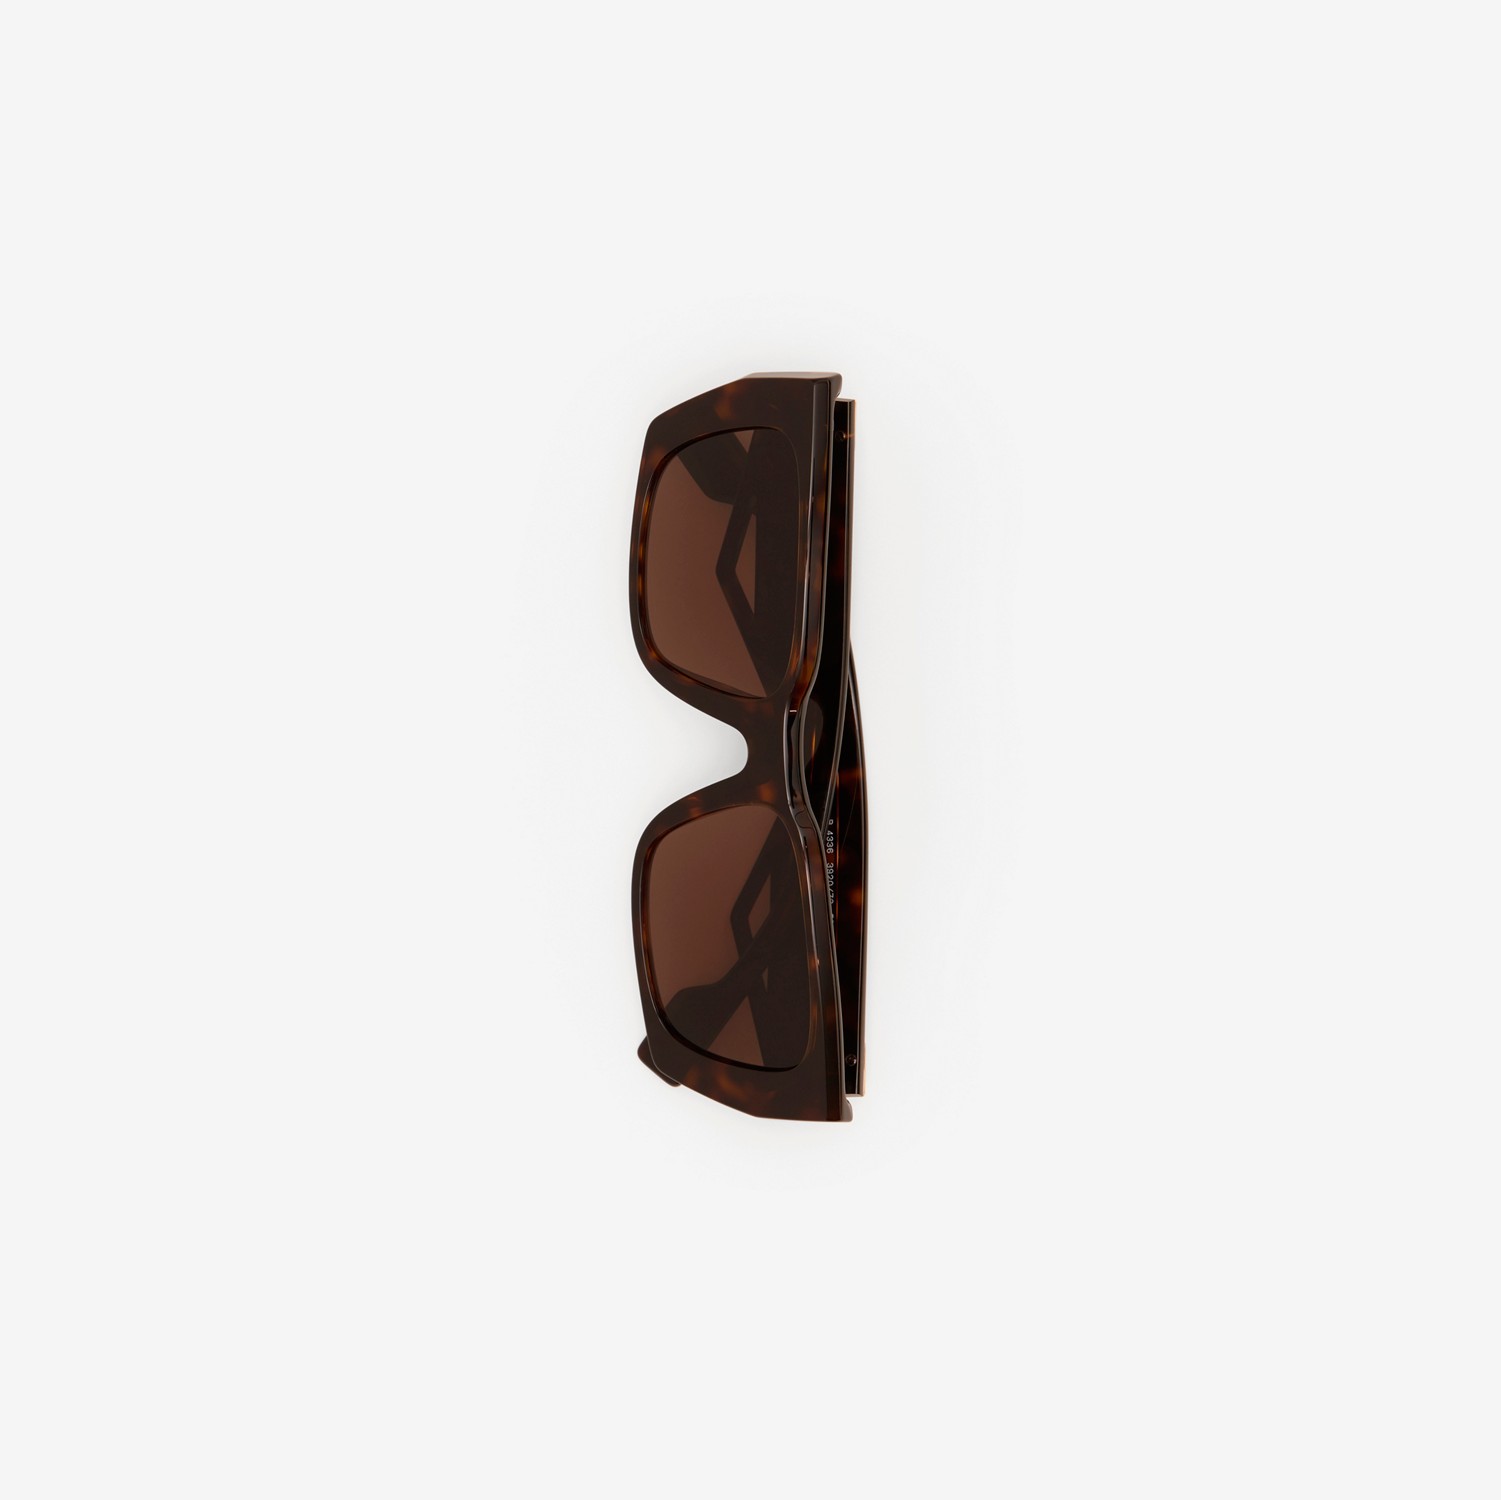 B Motif Rectangular Frame Sunglasses in Tortoiseshell - Women | Burberry® Official